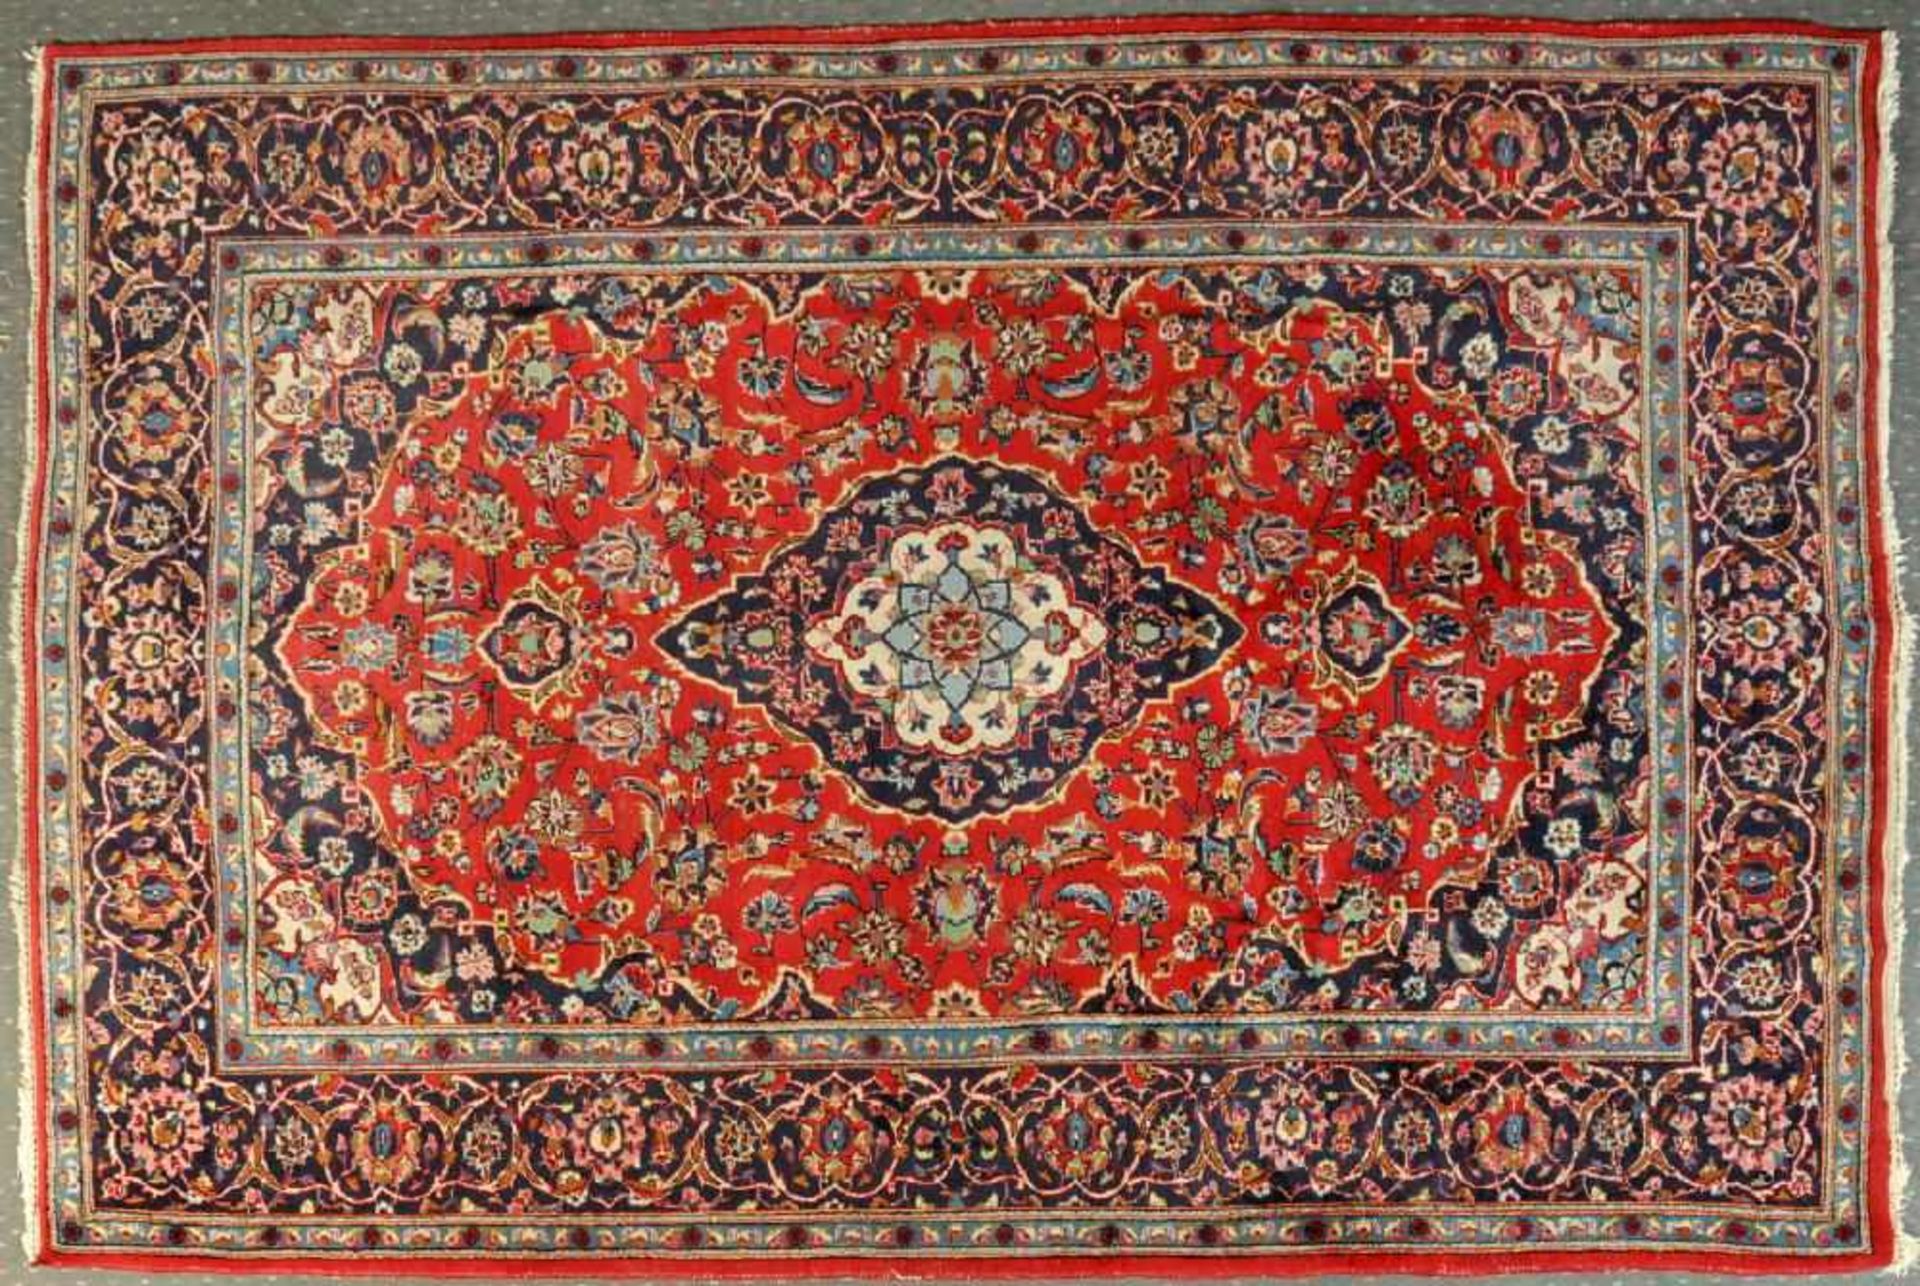 Keschan, Persien, 198 x 310 cmWolle, rotgrundig, mehrfarb. Mittelstück, umgeben von floralen